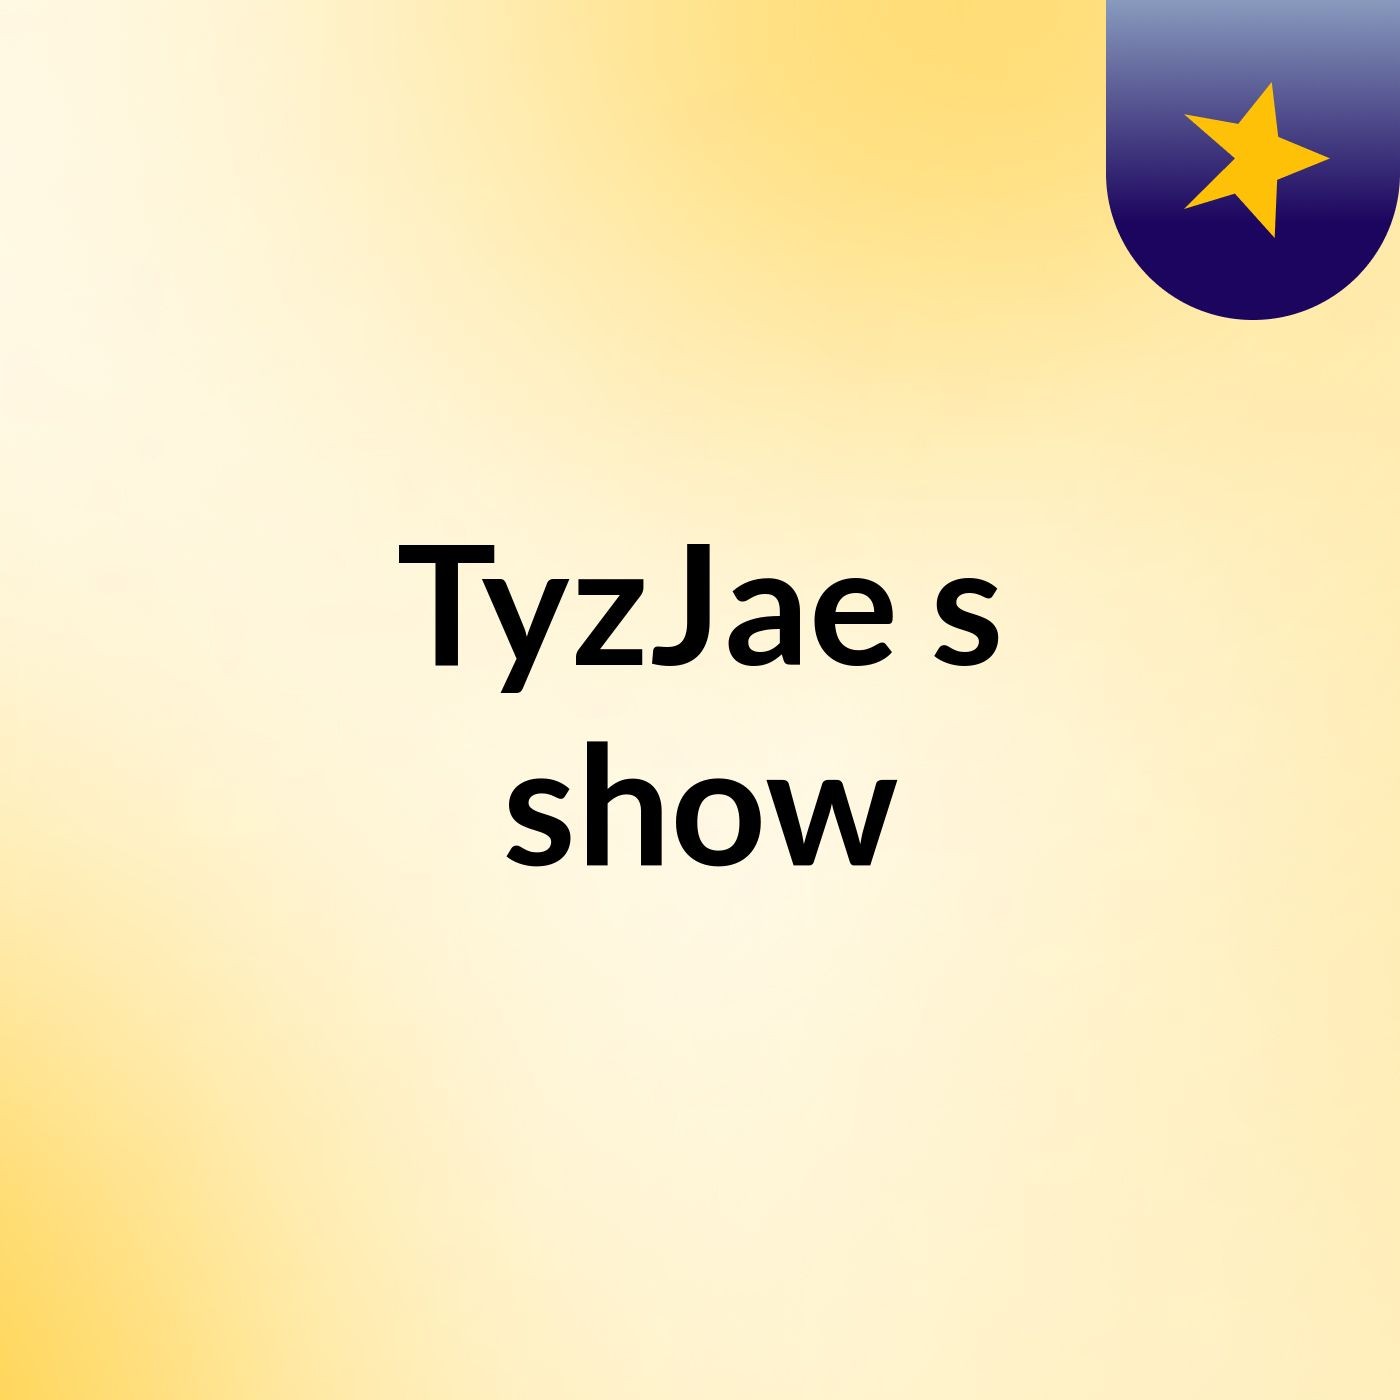 TyzJae's show